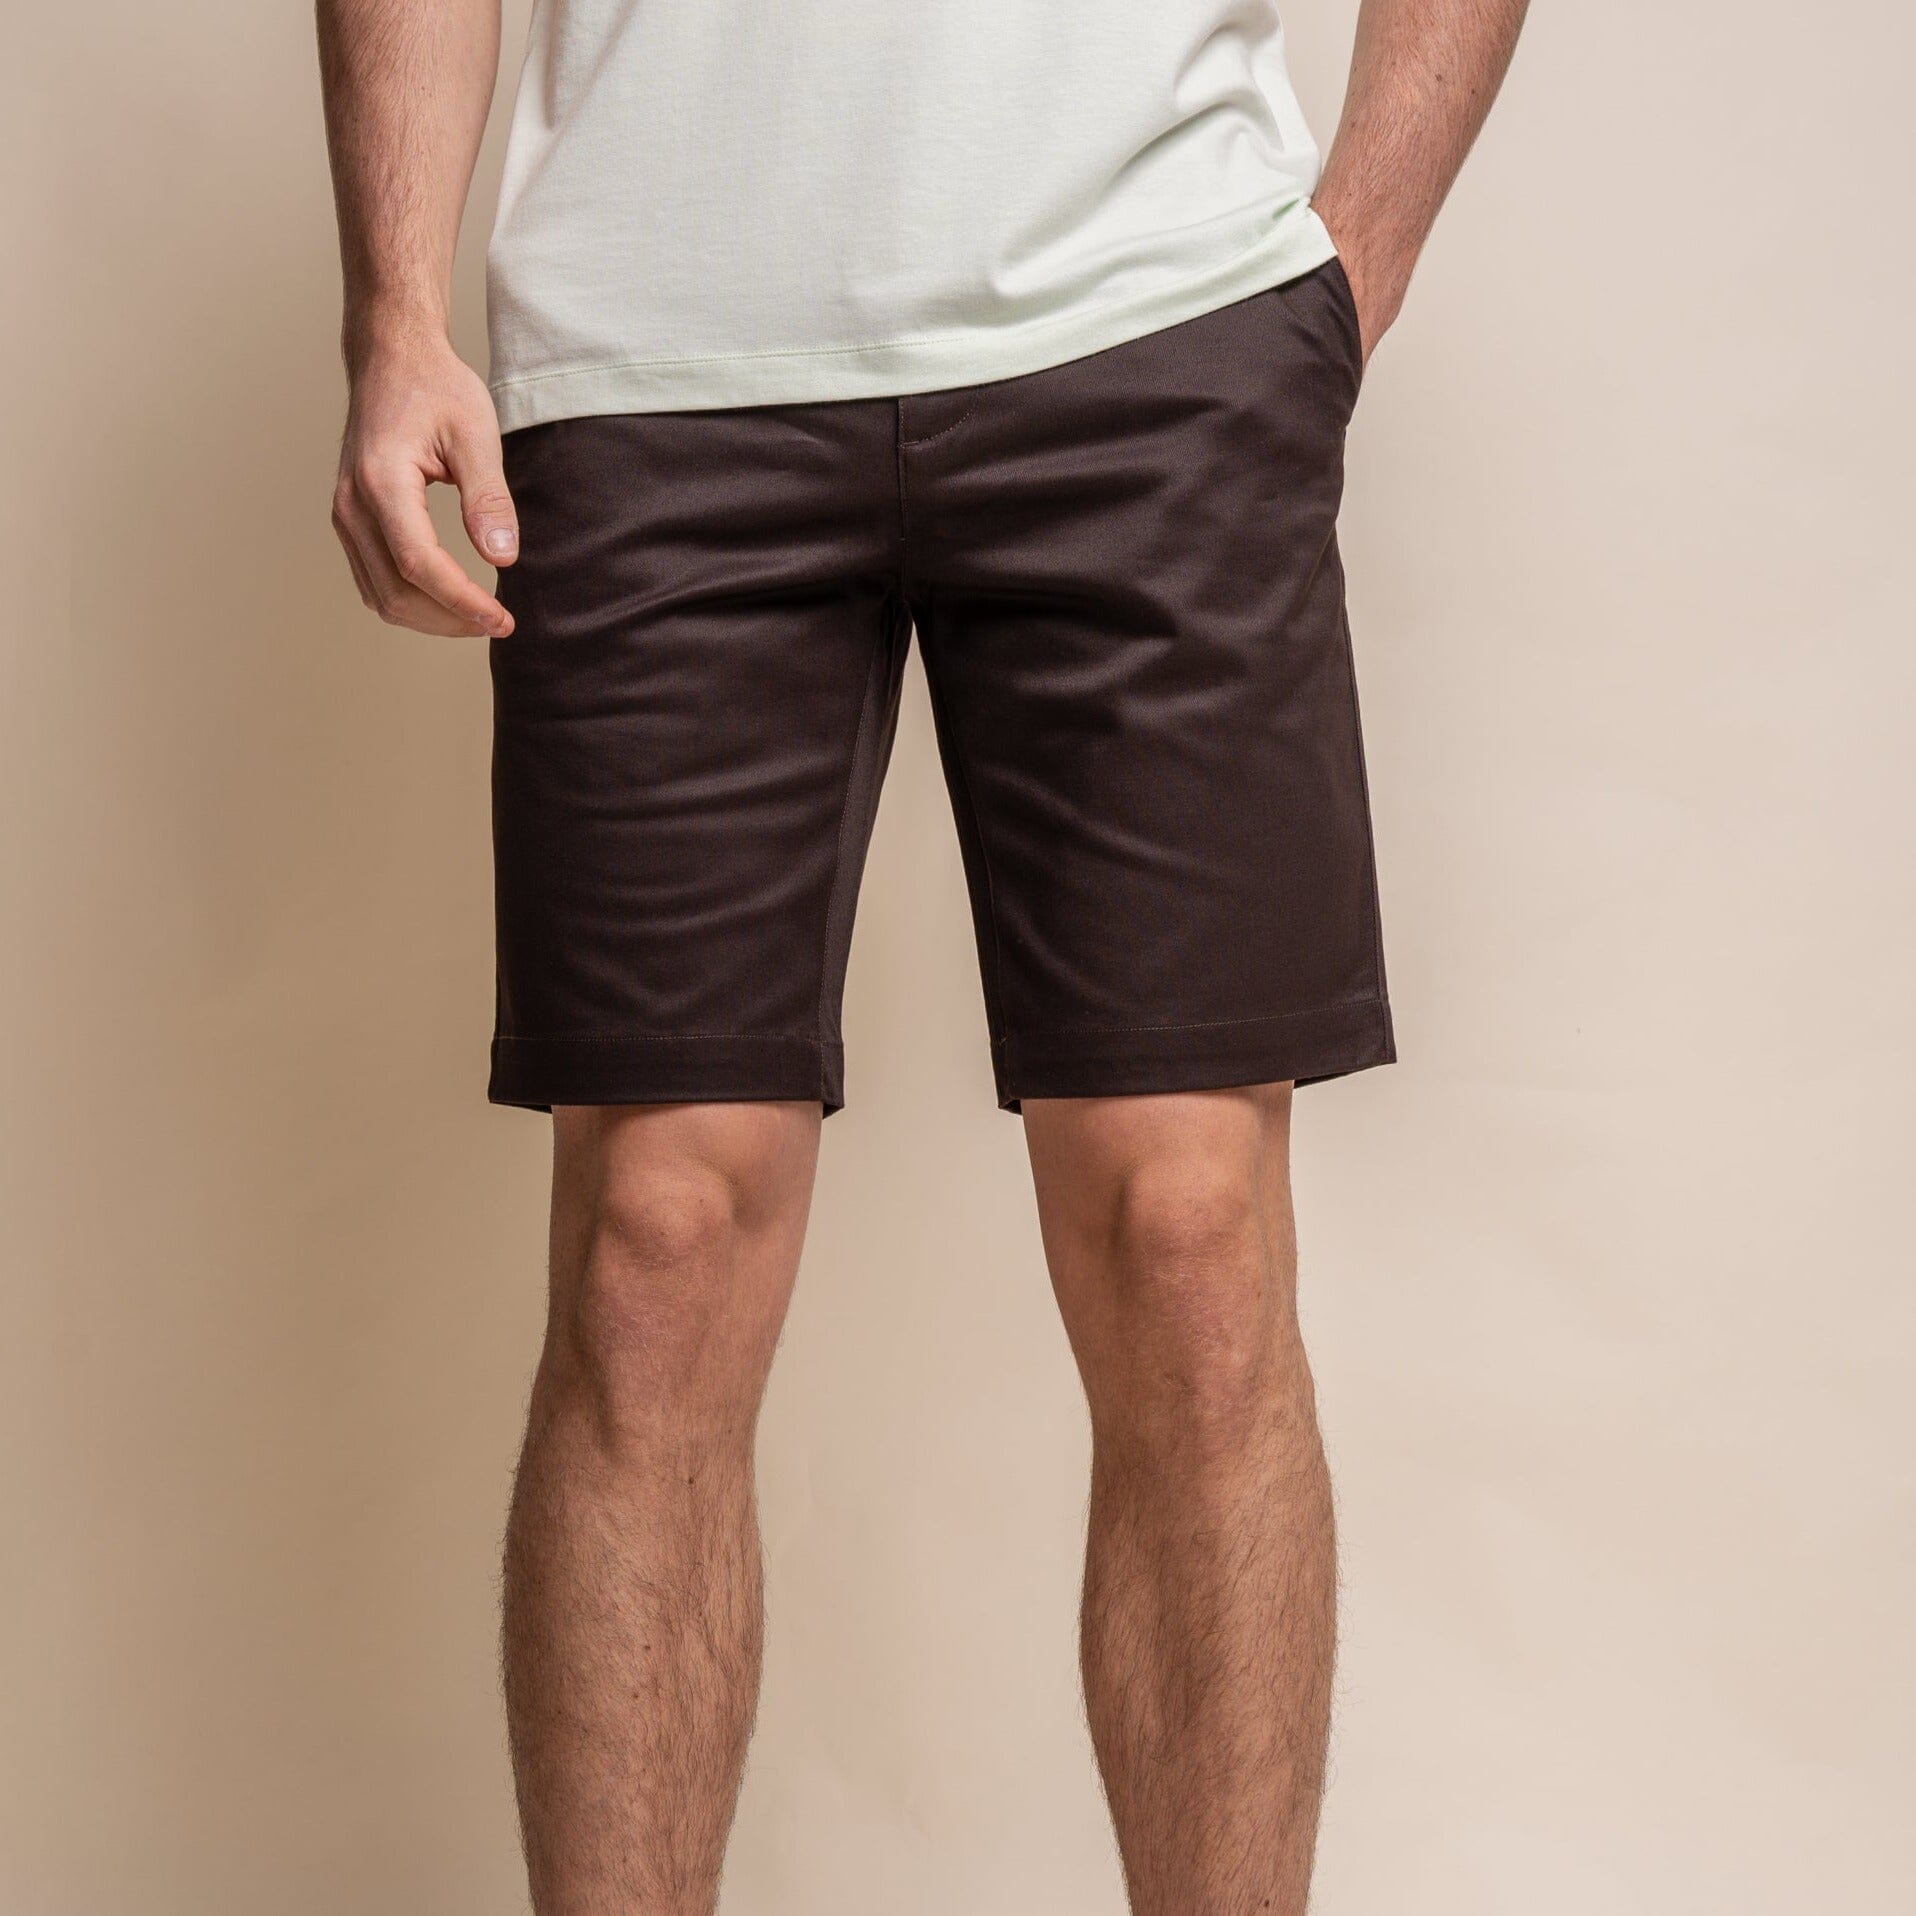 Dakota Chocolate Chino Shorts - Shorts - 28R - THREADPEPPER